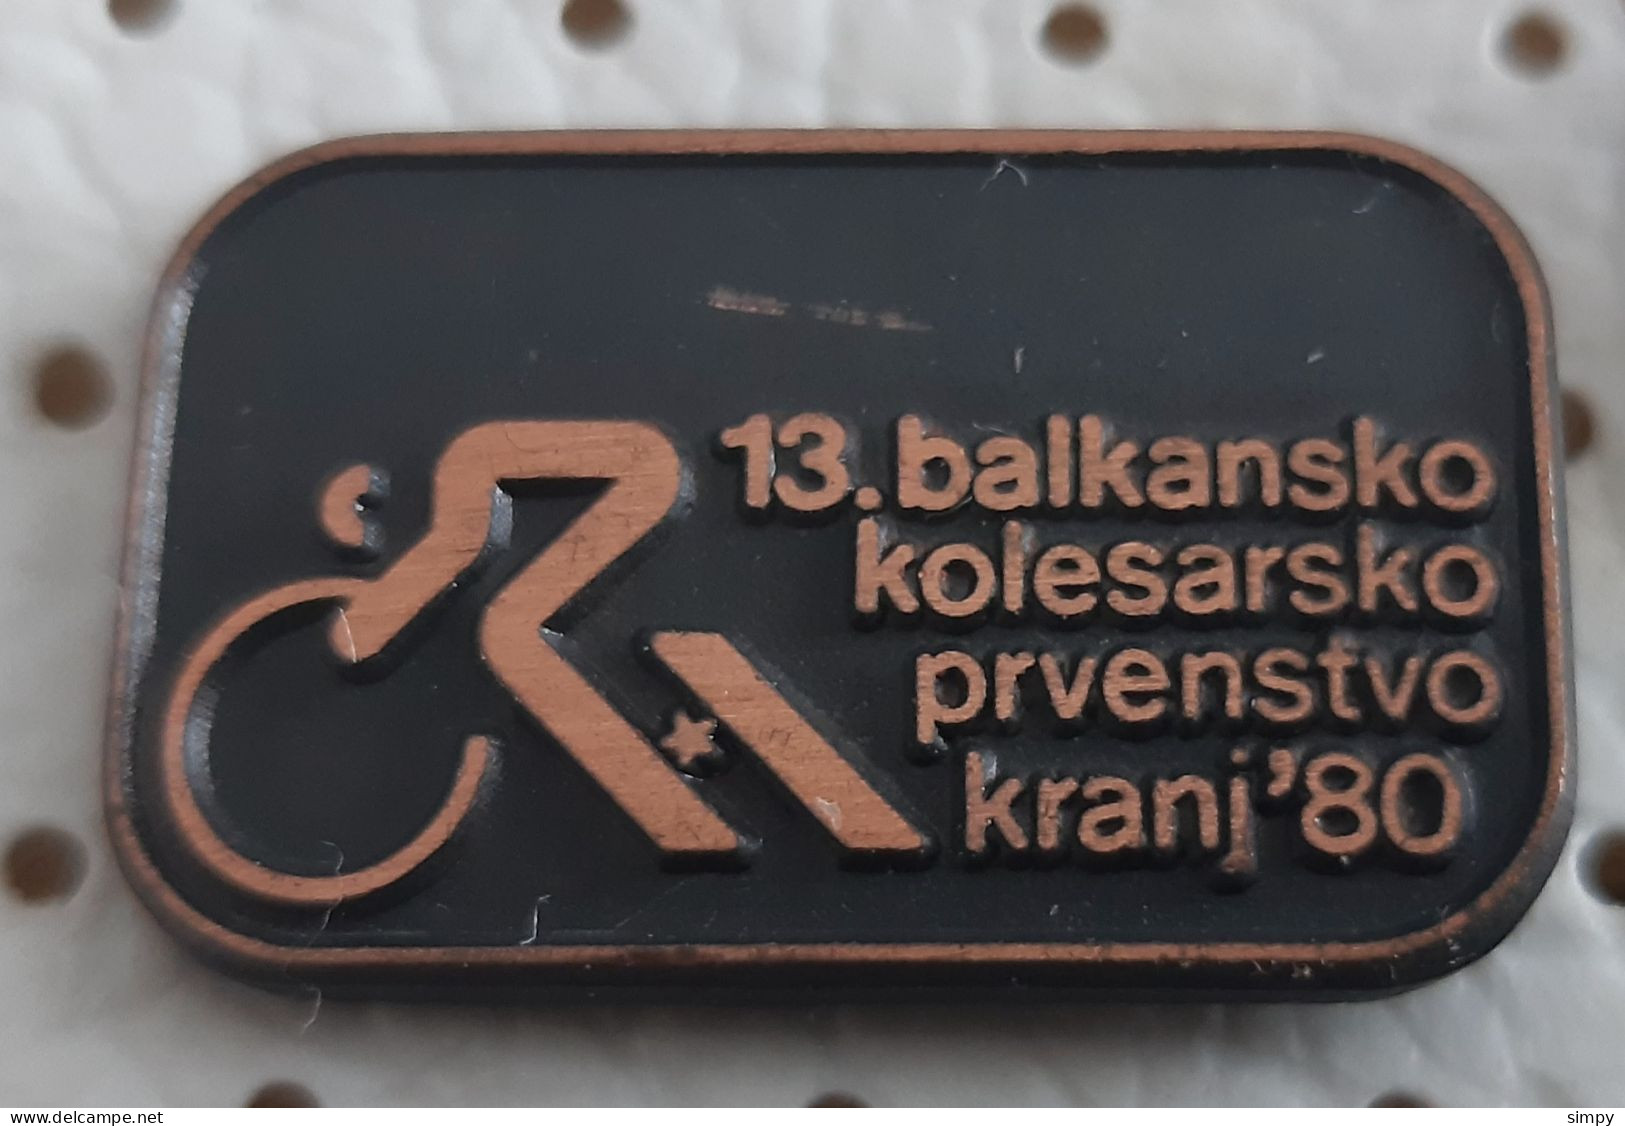 13. Balkan Cycling Championship Kranj 1980 Bicycle Bike Slovenia Ex Yugoslavia Pin - Cycling